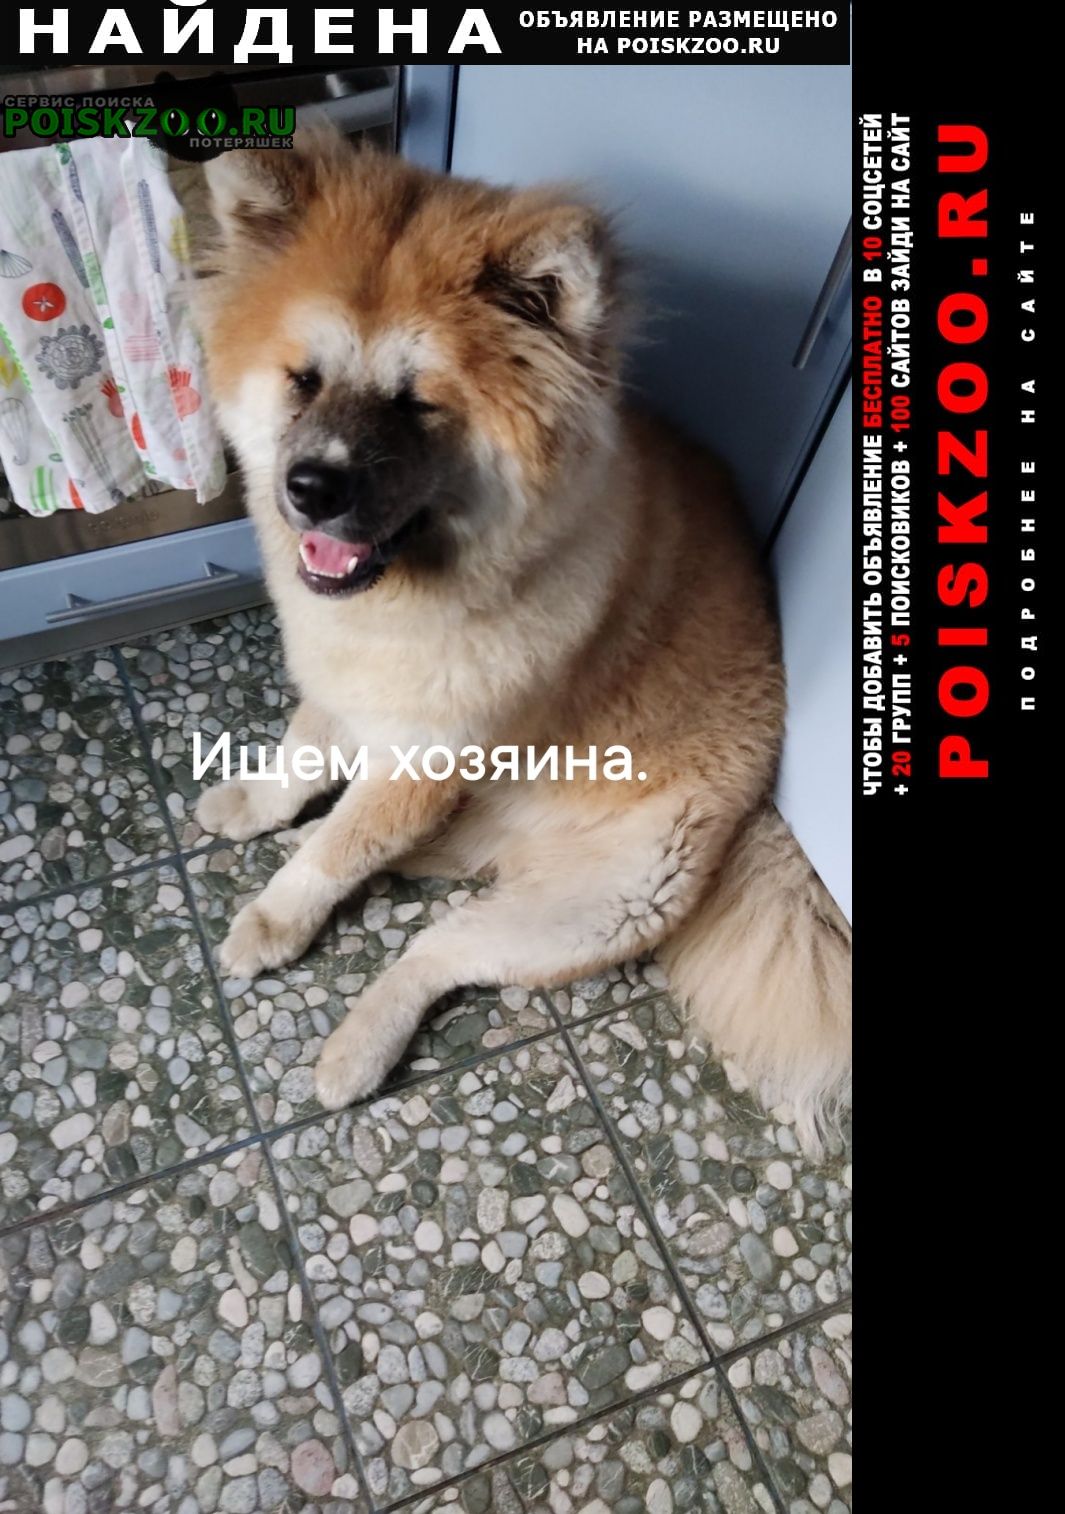 Найдена собака кобель ищем хозяина, марьино Москва